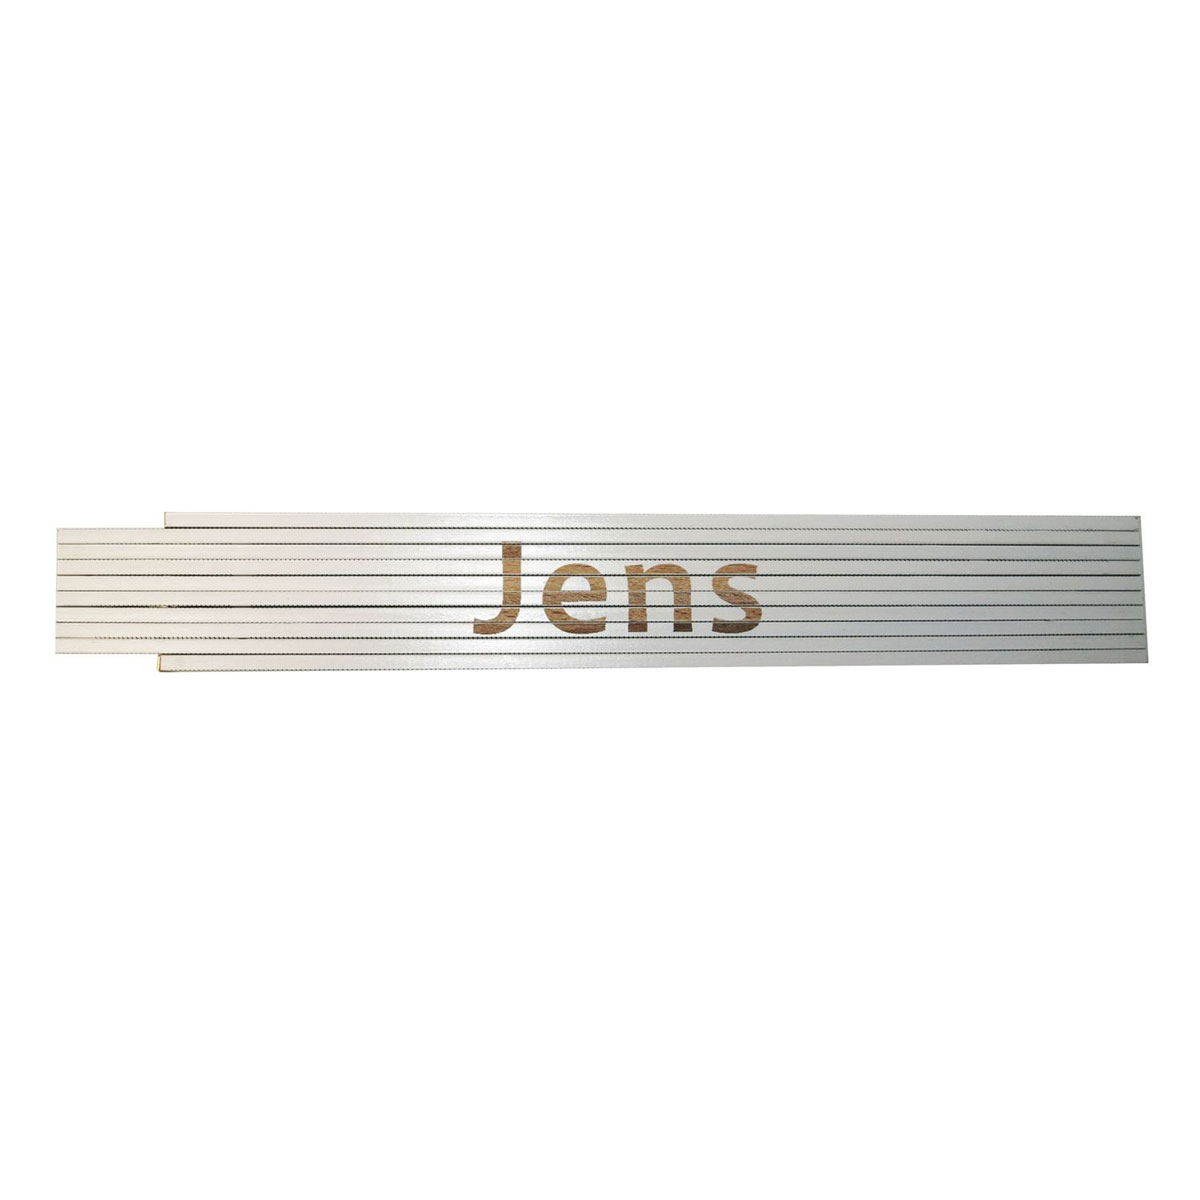 Meterstab „Jens“, 2m, weiß